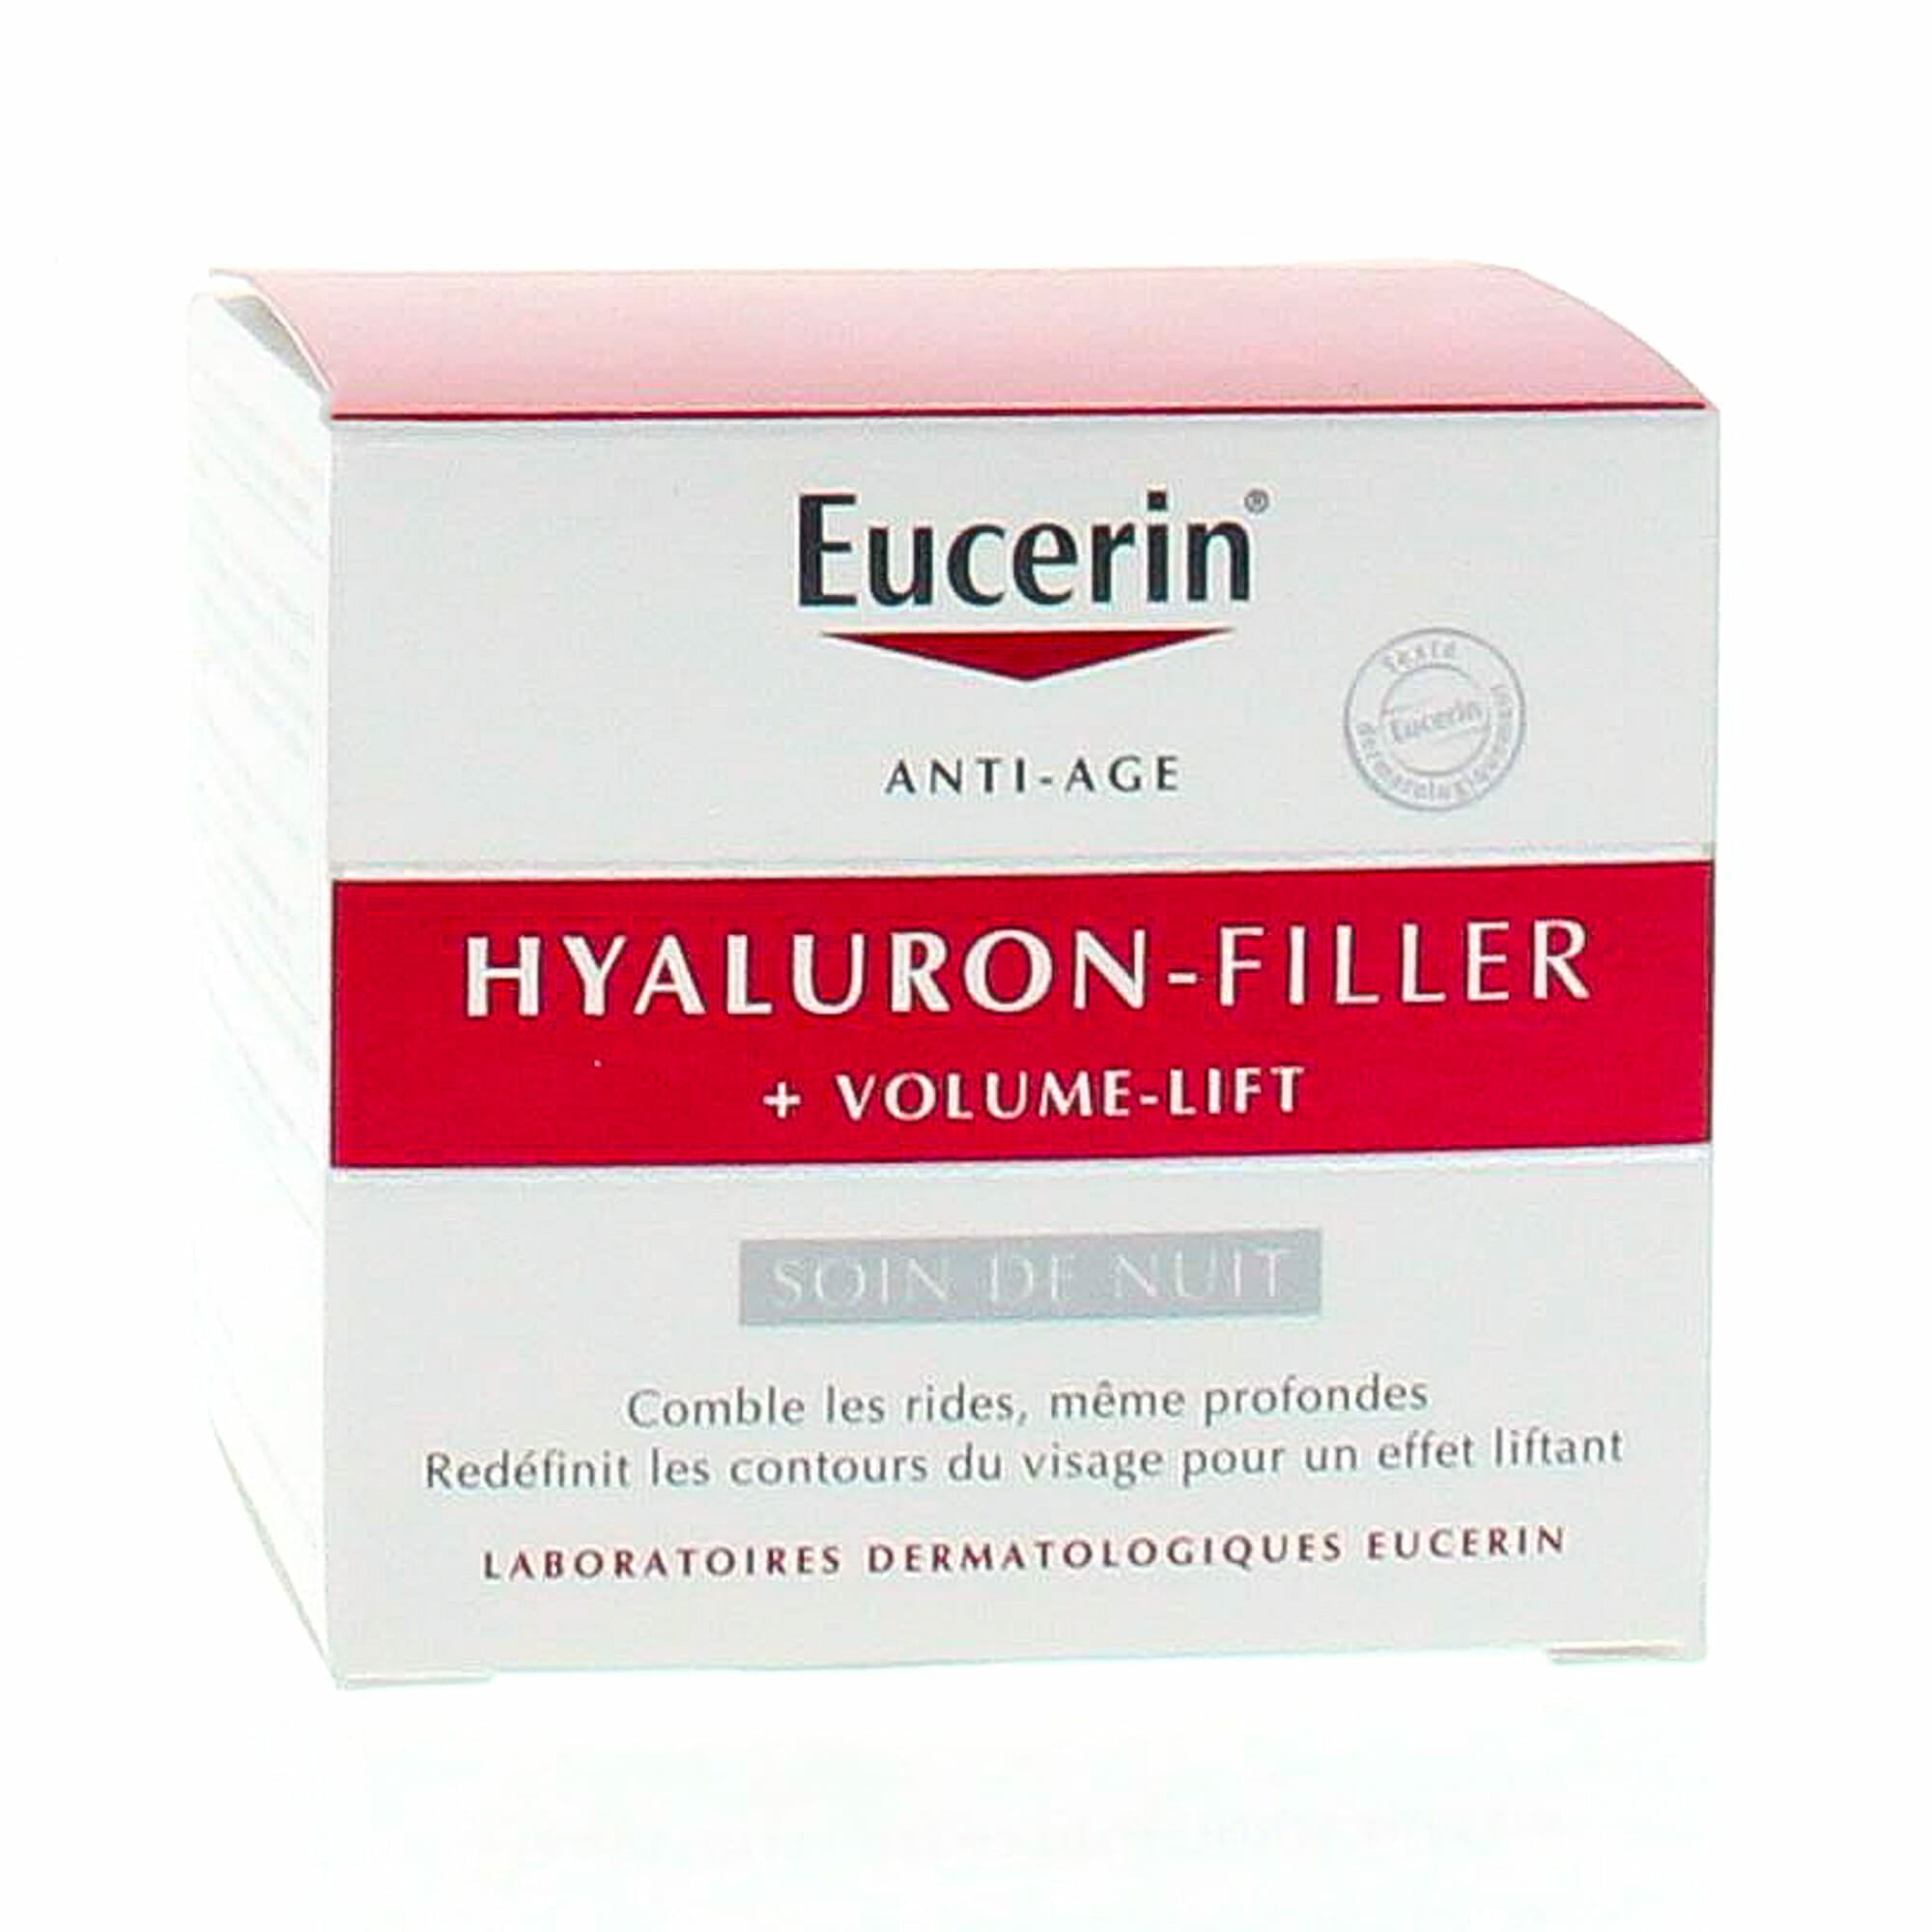 eucerin-hyaluron-filler-volume-lift-soin-de-nuit-50-ml